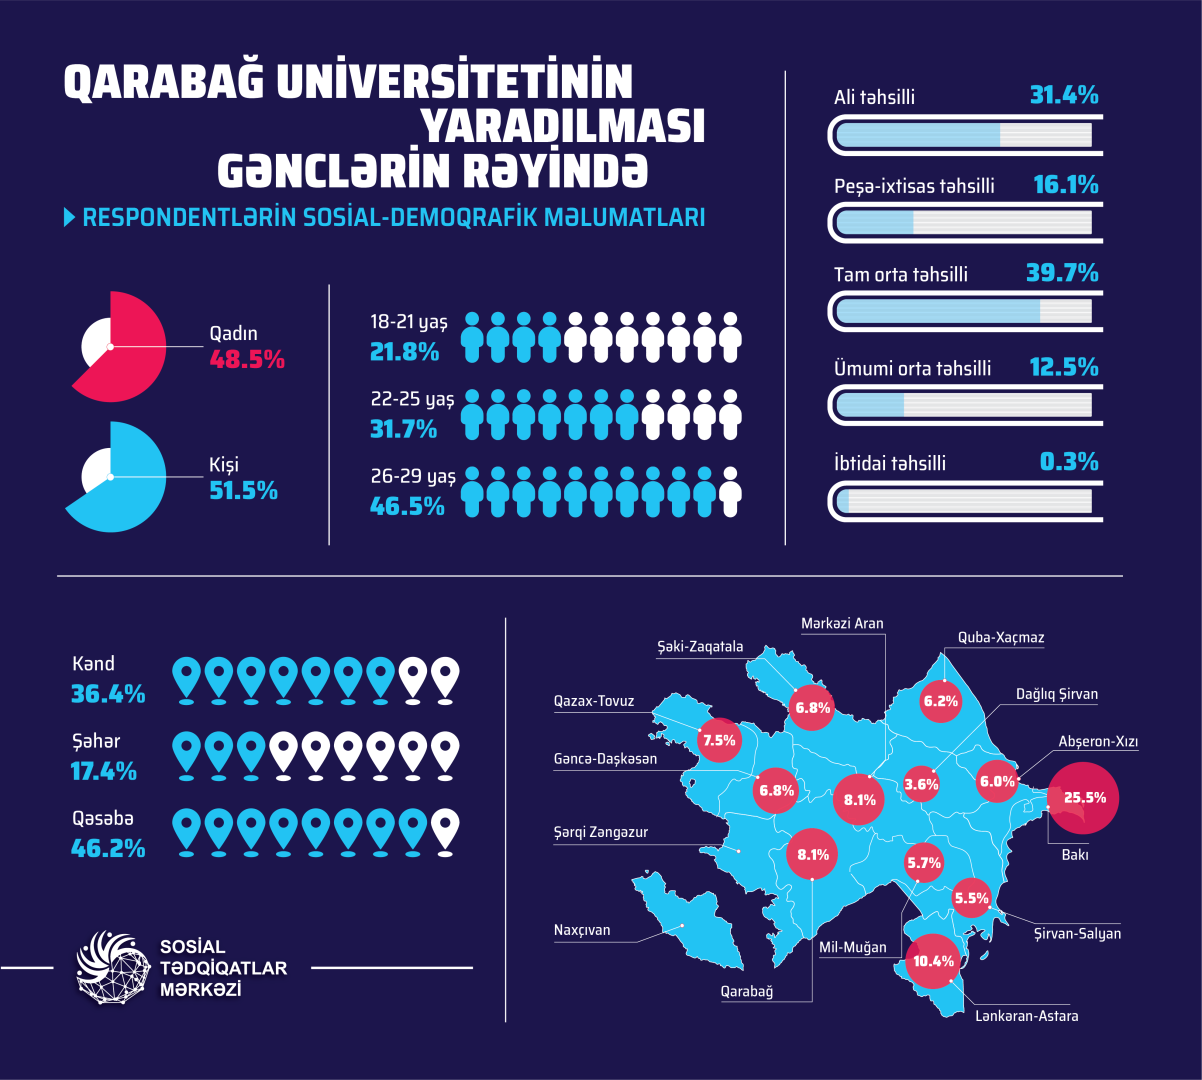 Создание Карабахского университета в отзывах молодежи (ФОТО)